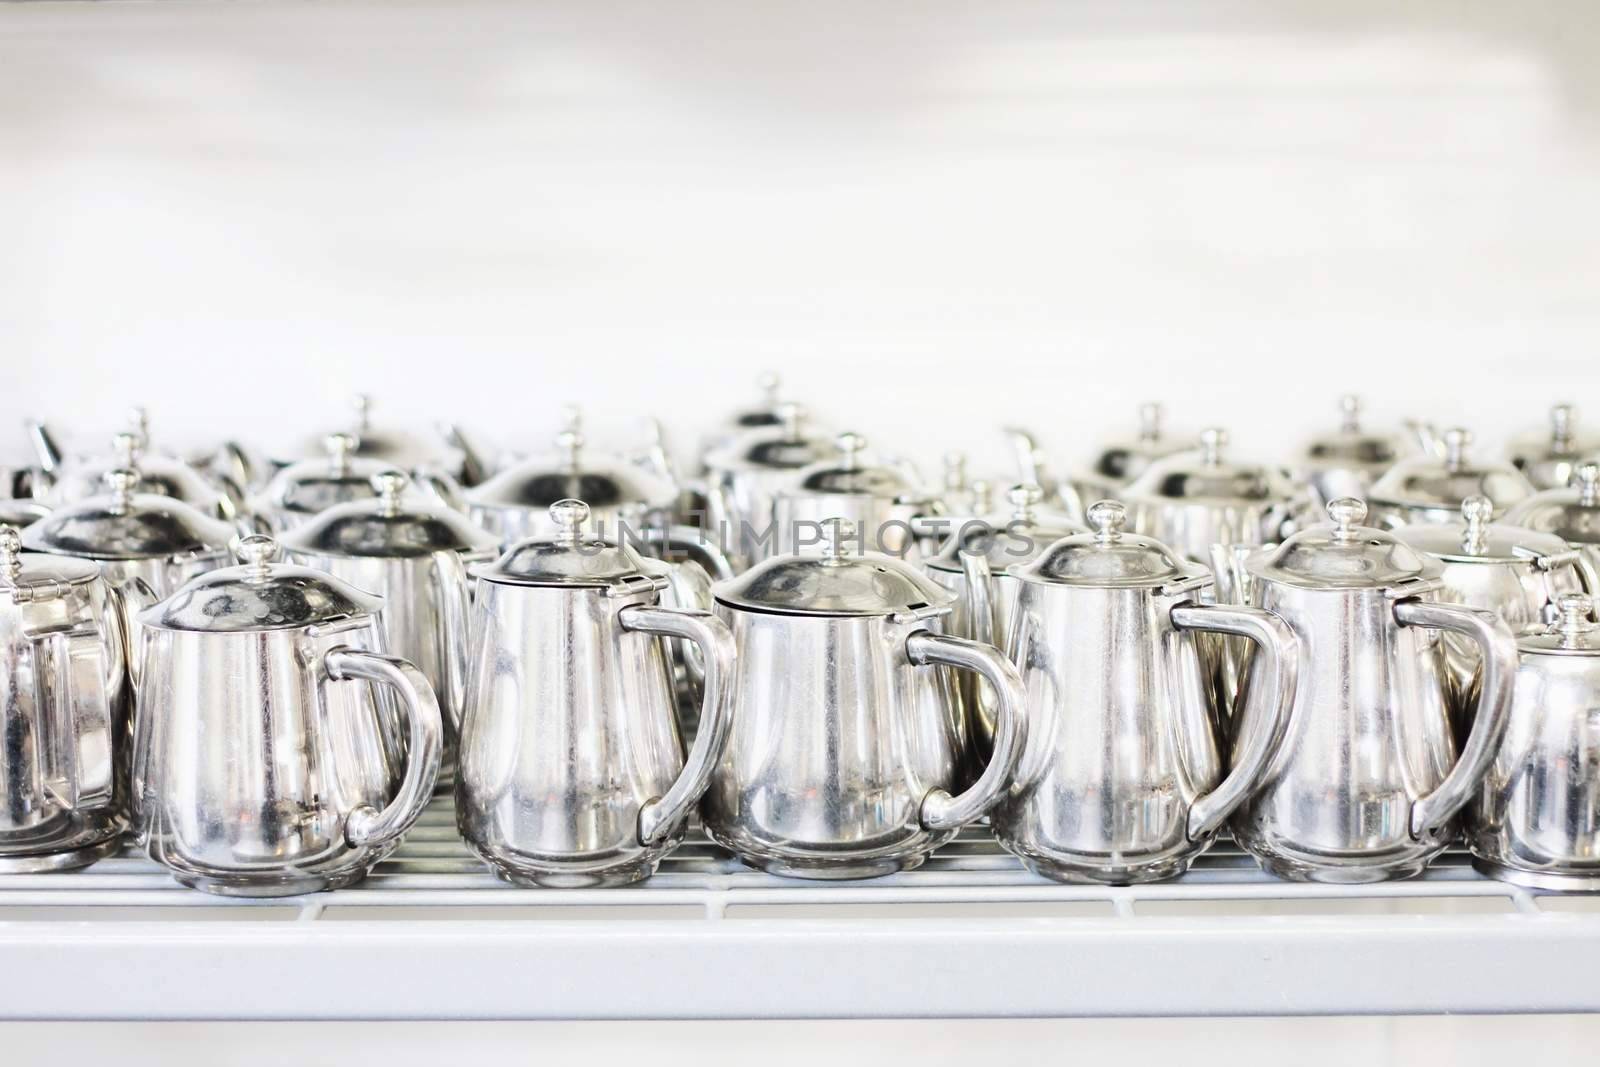 metal teaand coffee pots in commercial kitchen